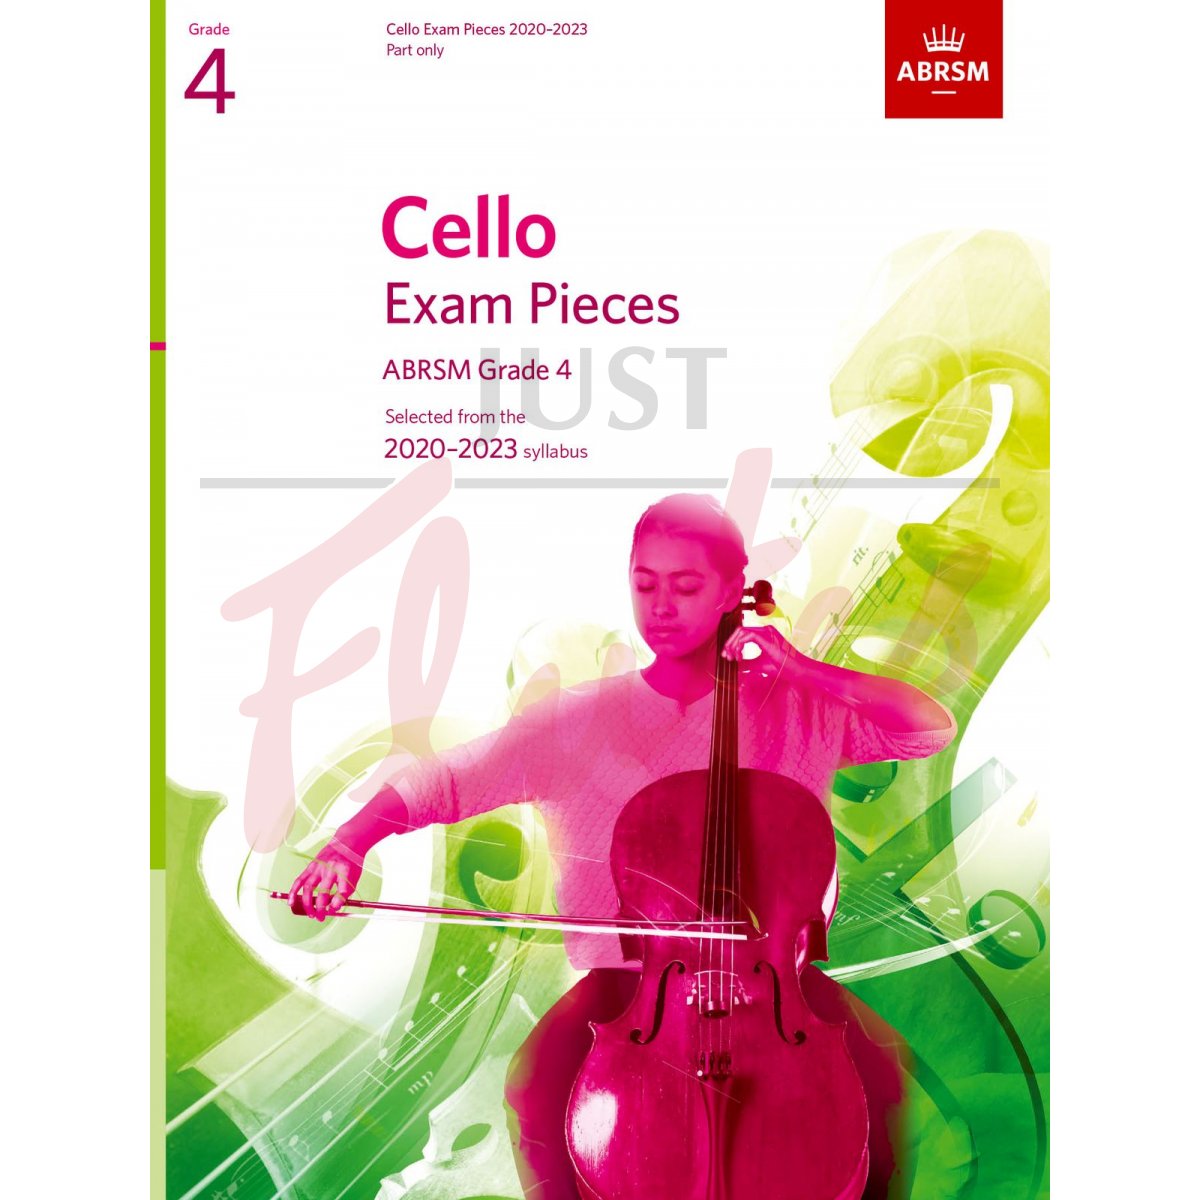 Cello Exam Pieces 2020-2023, Grade 4 [Part Only]